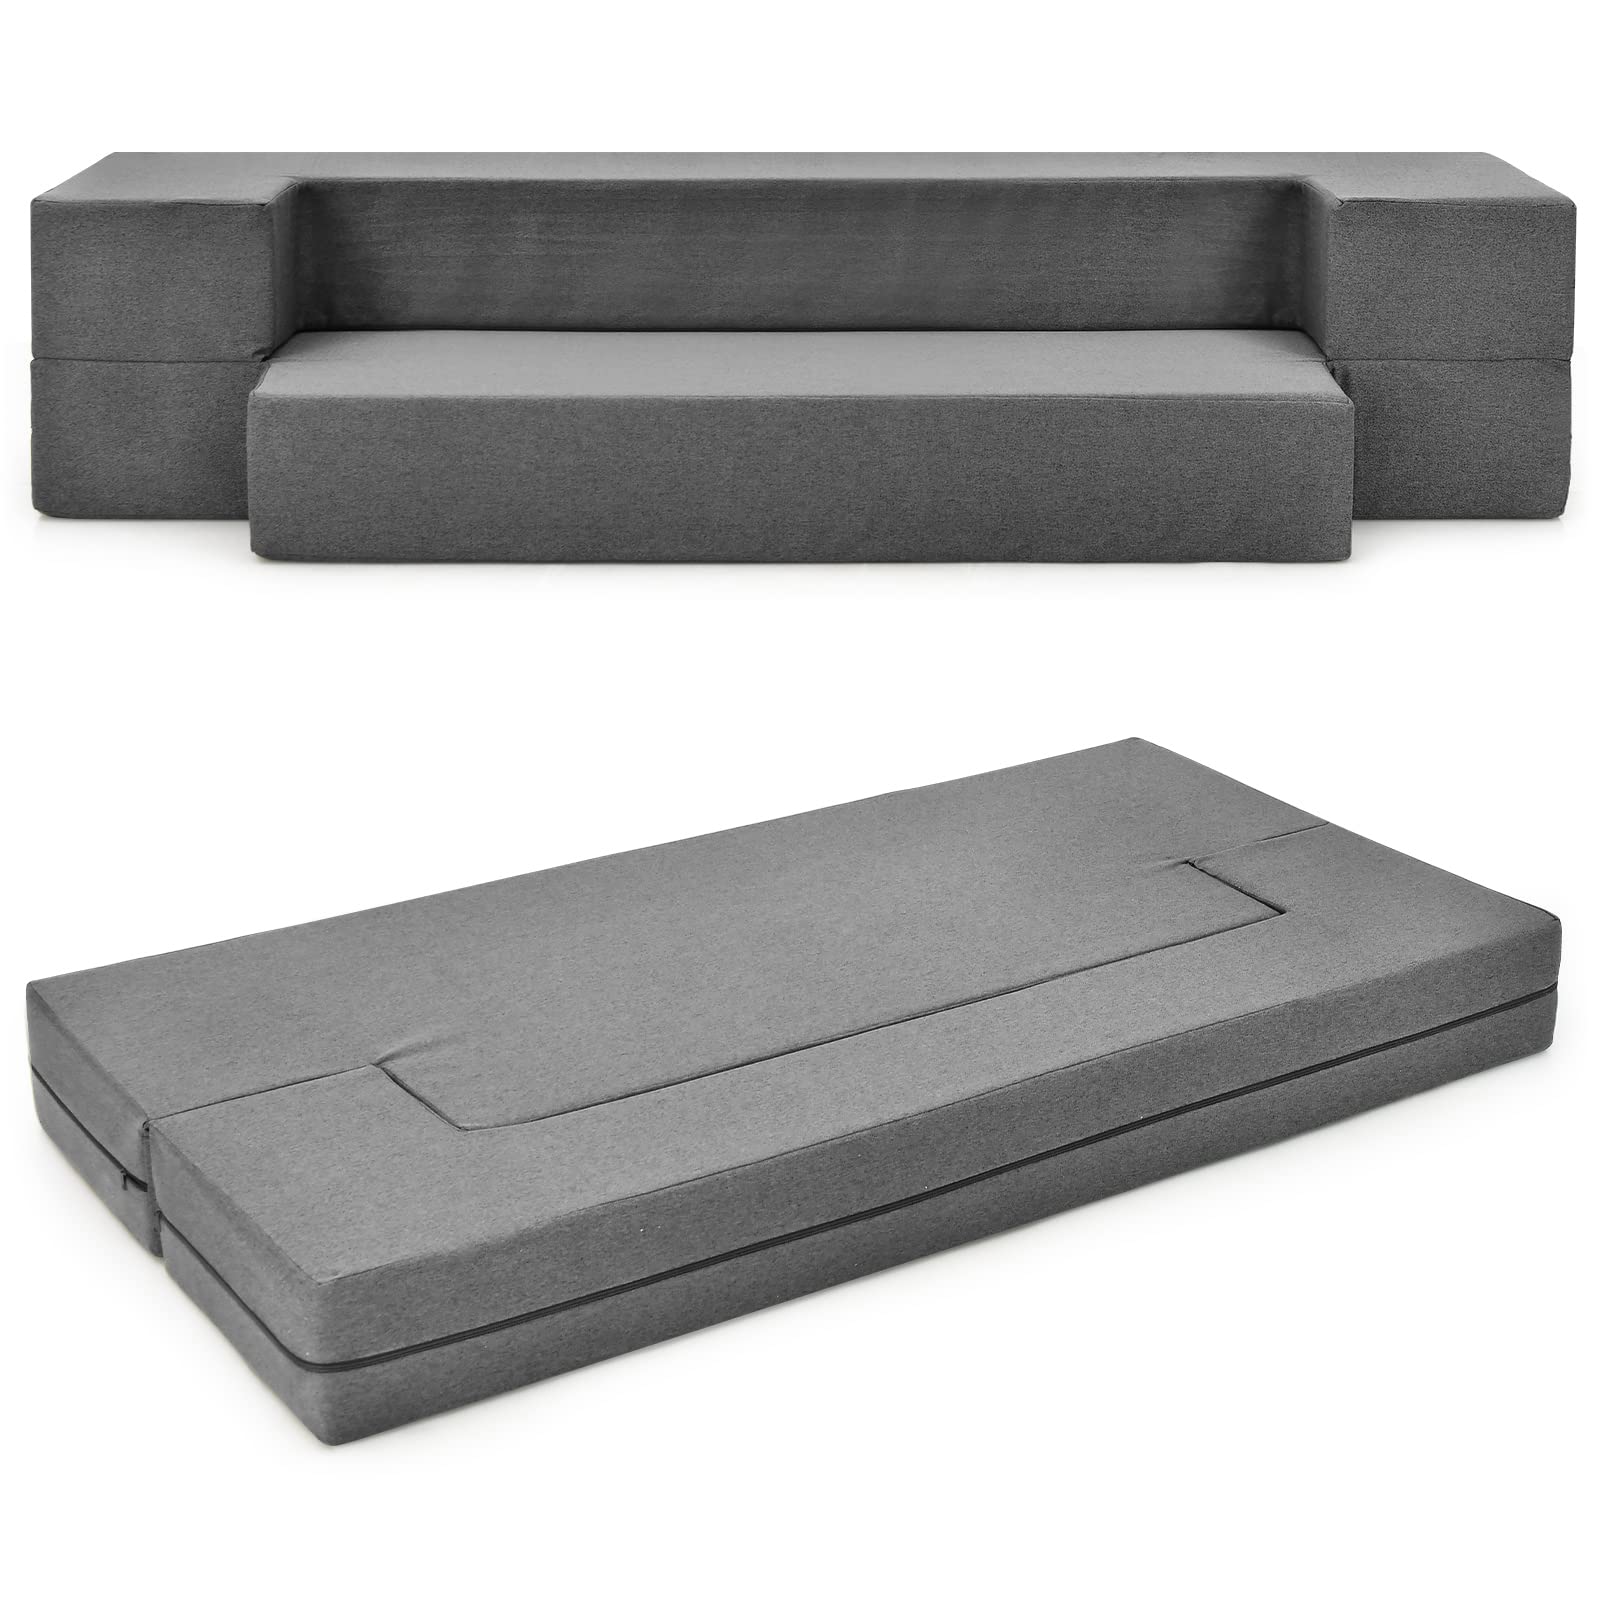 Giantex 8 Inch Folding Sofa Bed Couch, Memory Foam Futon Mattress Linen Fabric Sofa